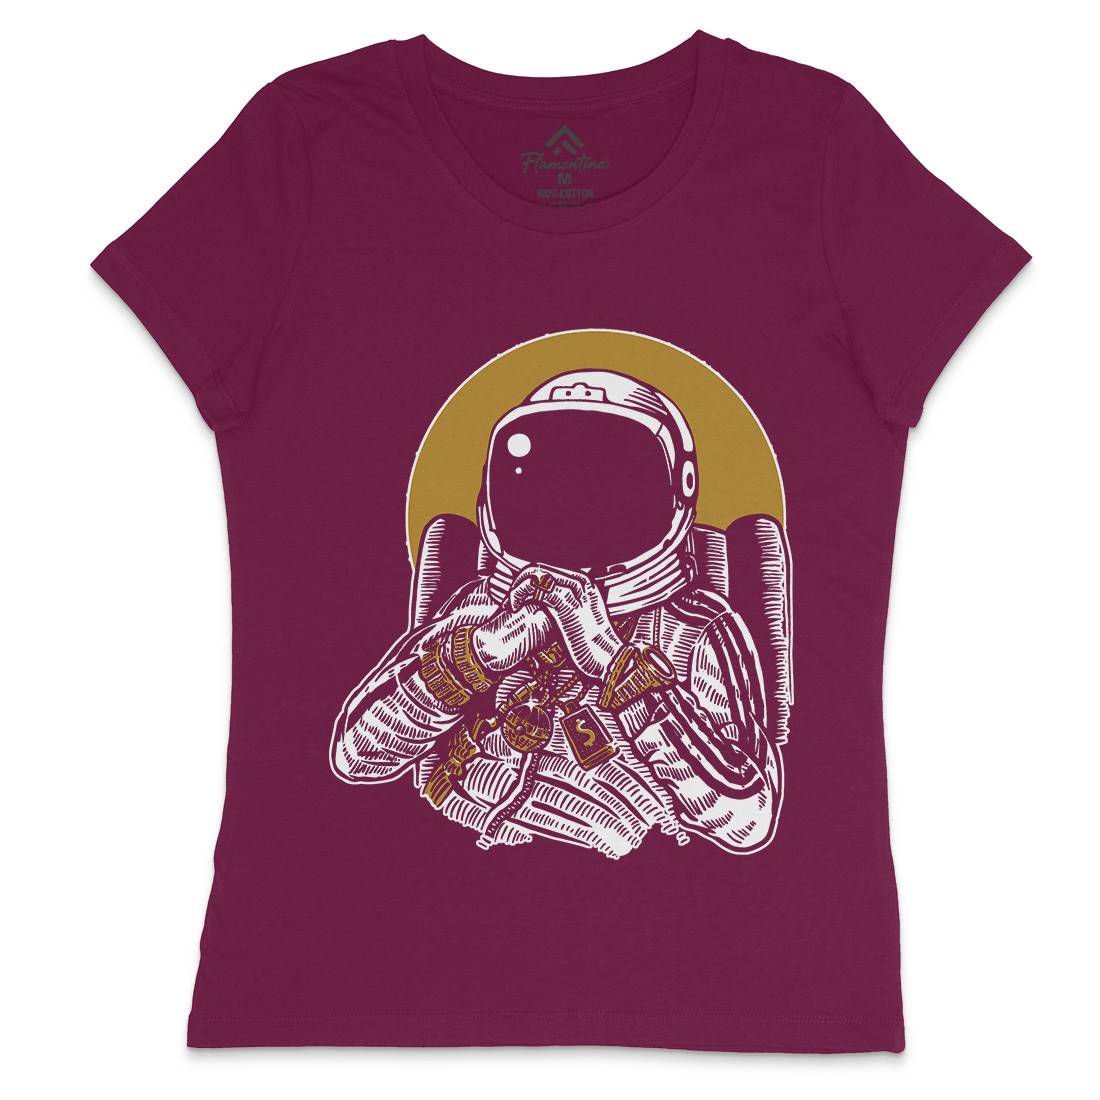 Dj Womens Crew Neck T-Shirt Space A575